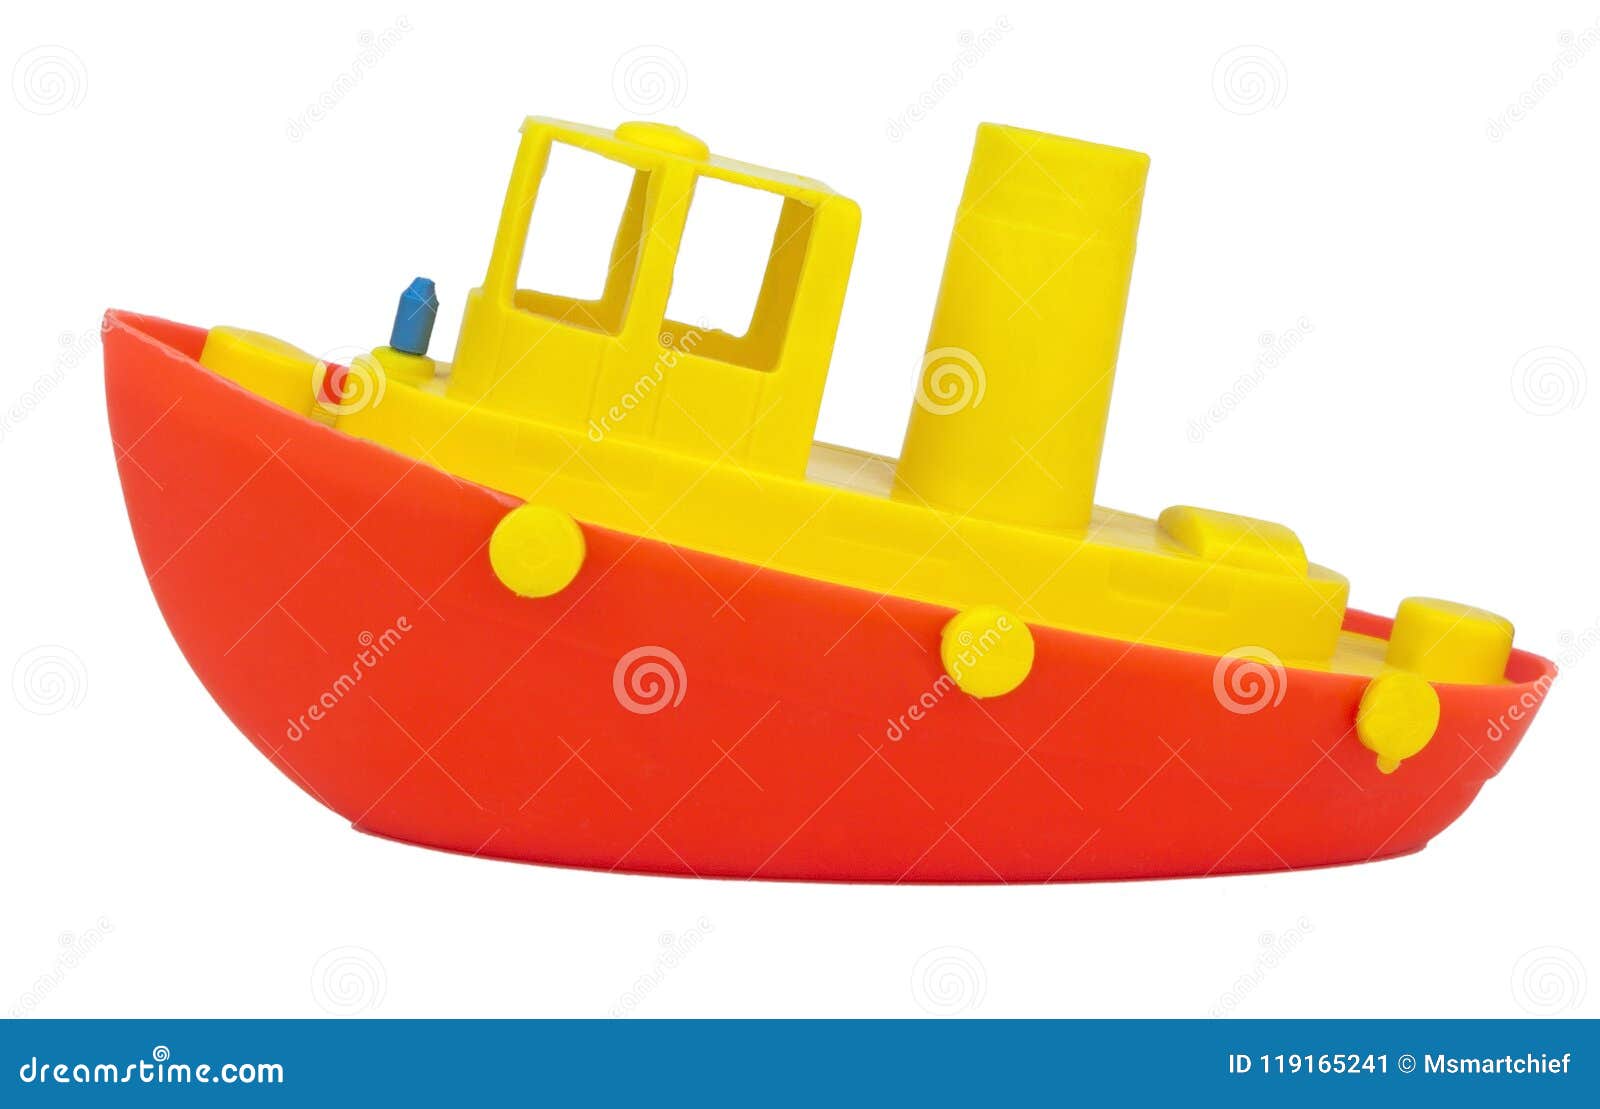 Volcánico dañar Admirable Toy Boat rojo y amarillo imagen de archivo. Imagen de barco - 119165241